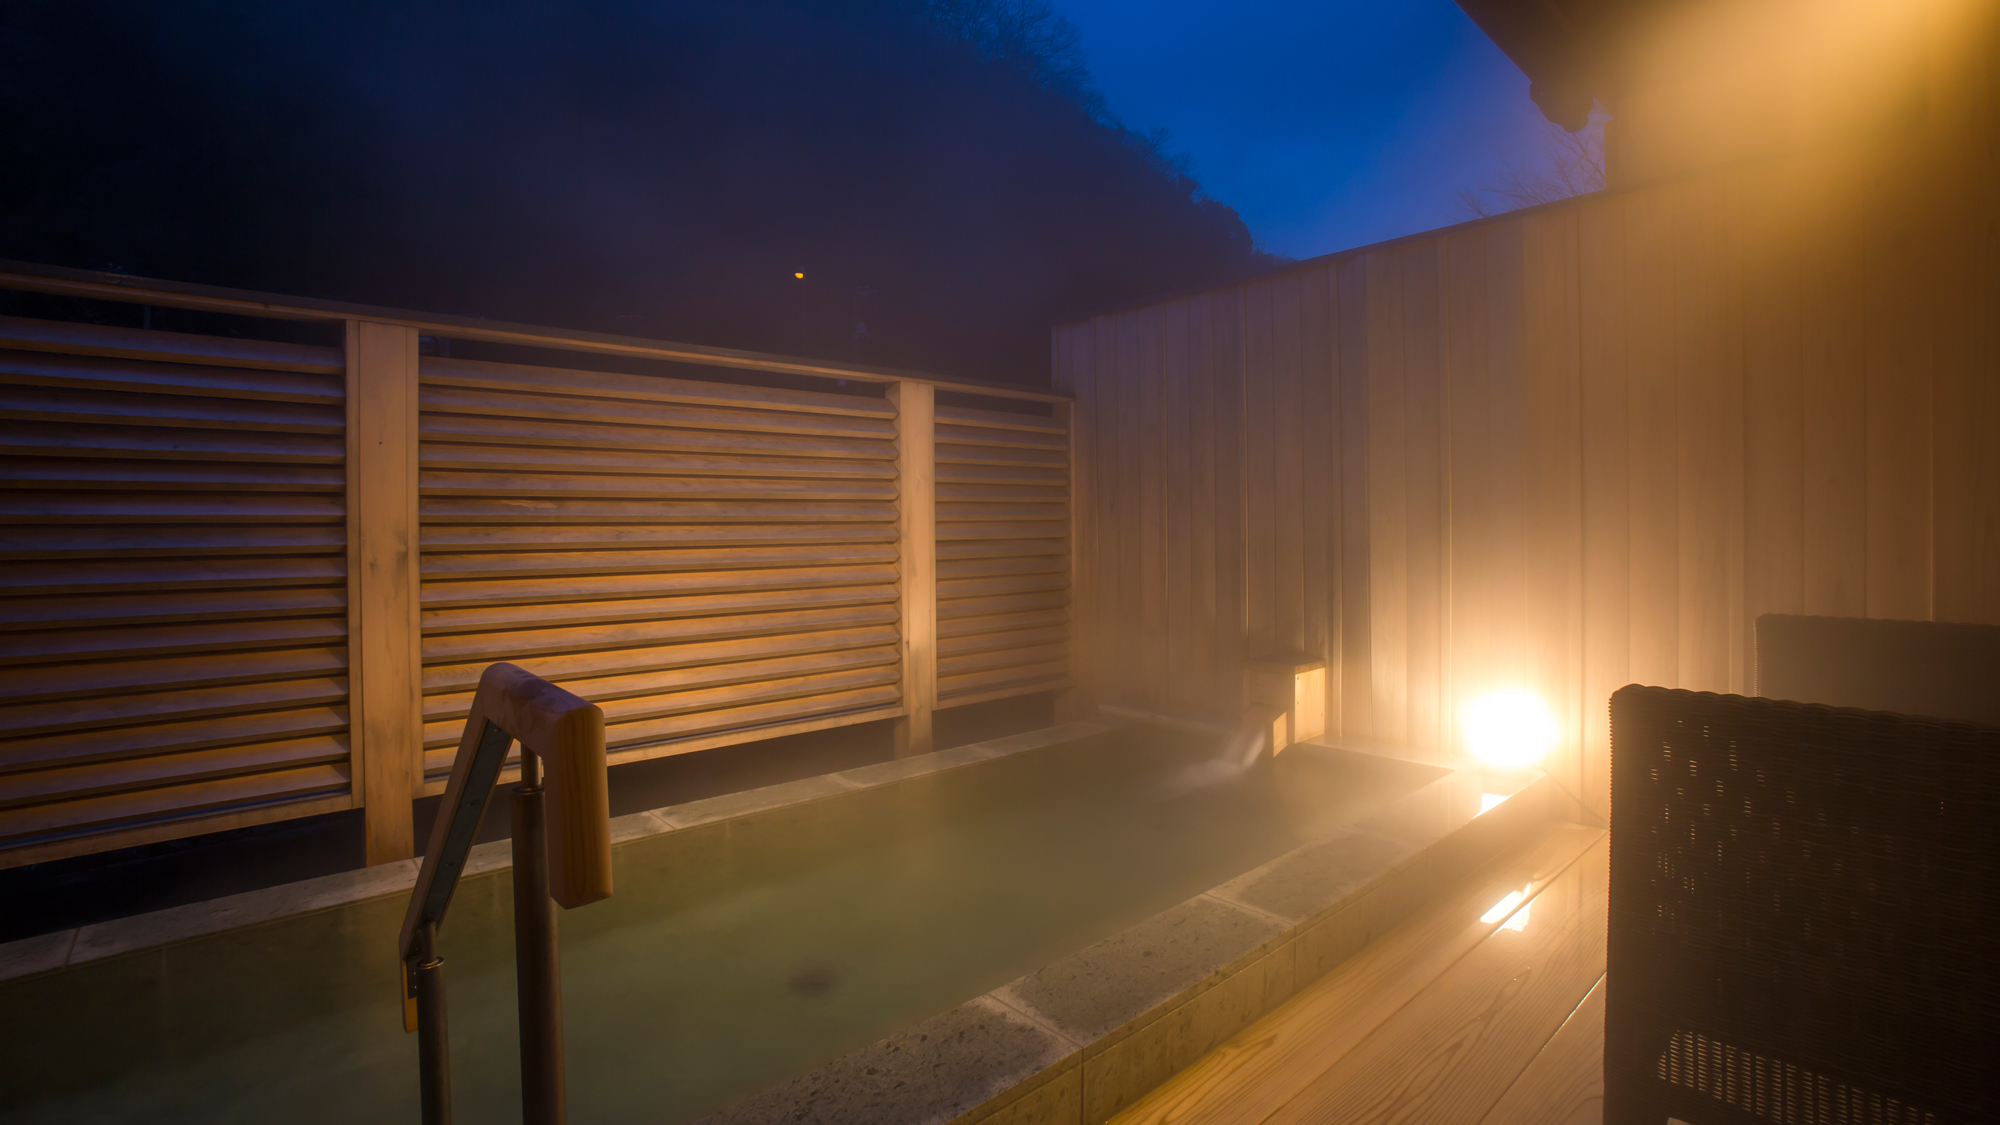 貸切露天風呂「なごみ湯」 横幅約3メートルの露天風呂で自家源泉の美合温泉をお愉しみいただけます